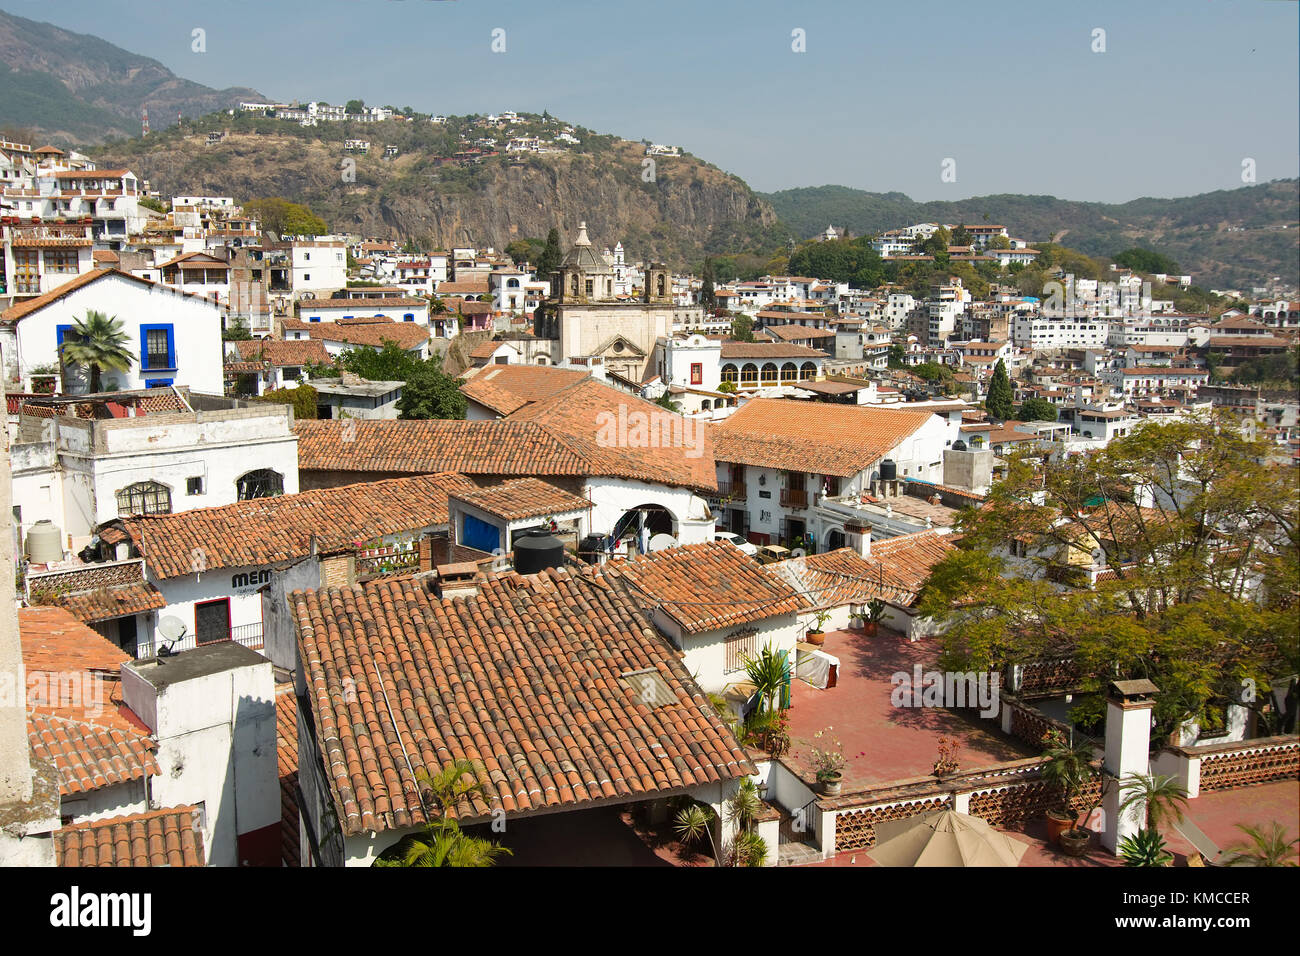 Taxco, Guerrero, Mexique - 2017 : vue panoramique sur le centre historique, montrant la traditionnelle des maisons blanches aux toits de tuiles rouges. Banque D'Images